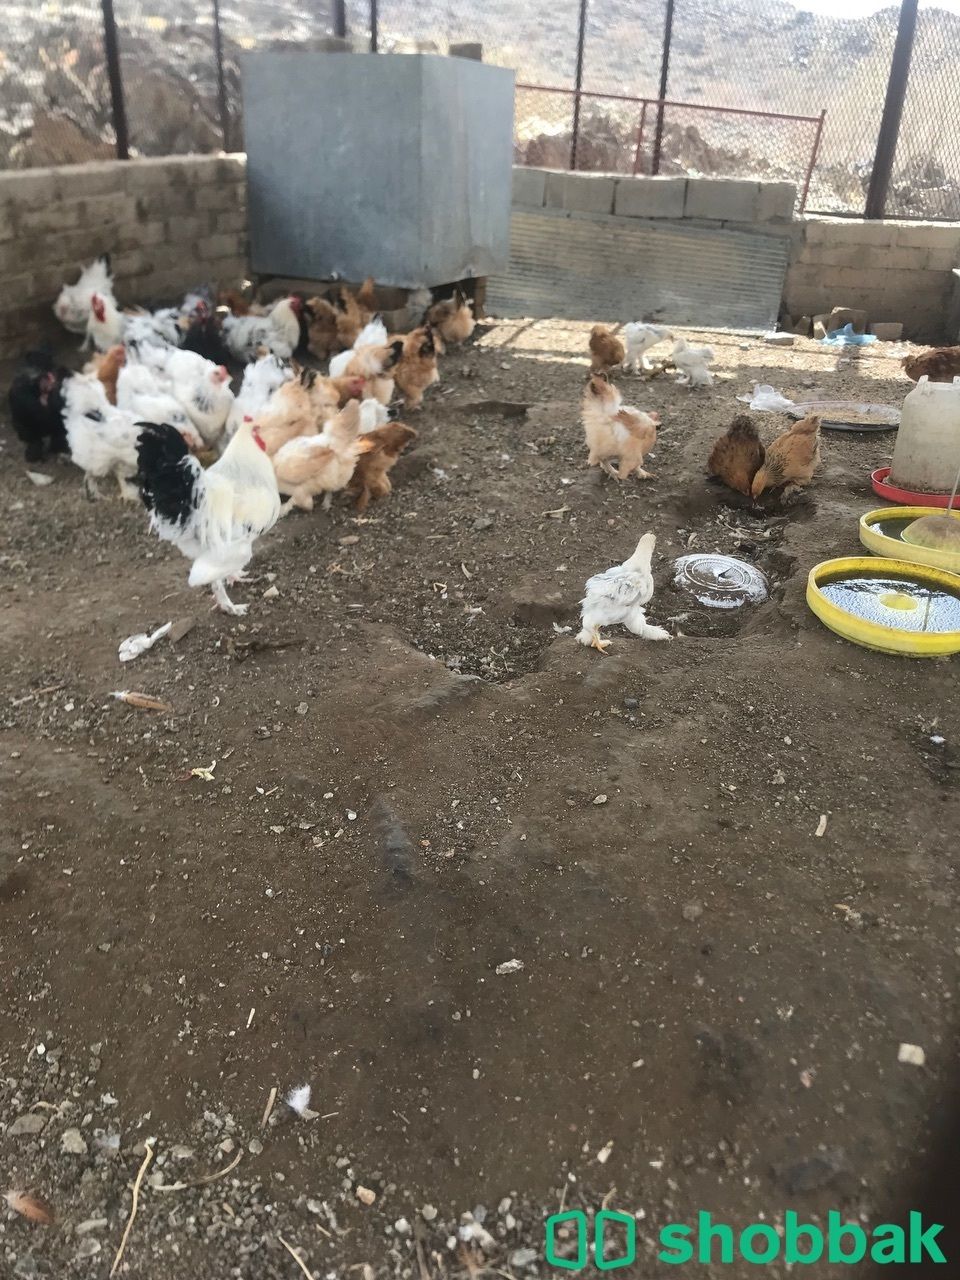 دجاج براهما بياض  شباك السعودية